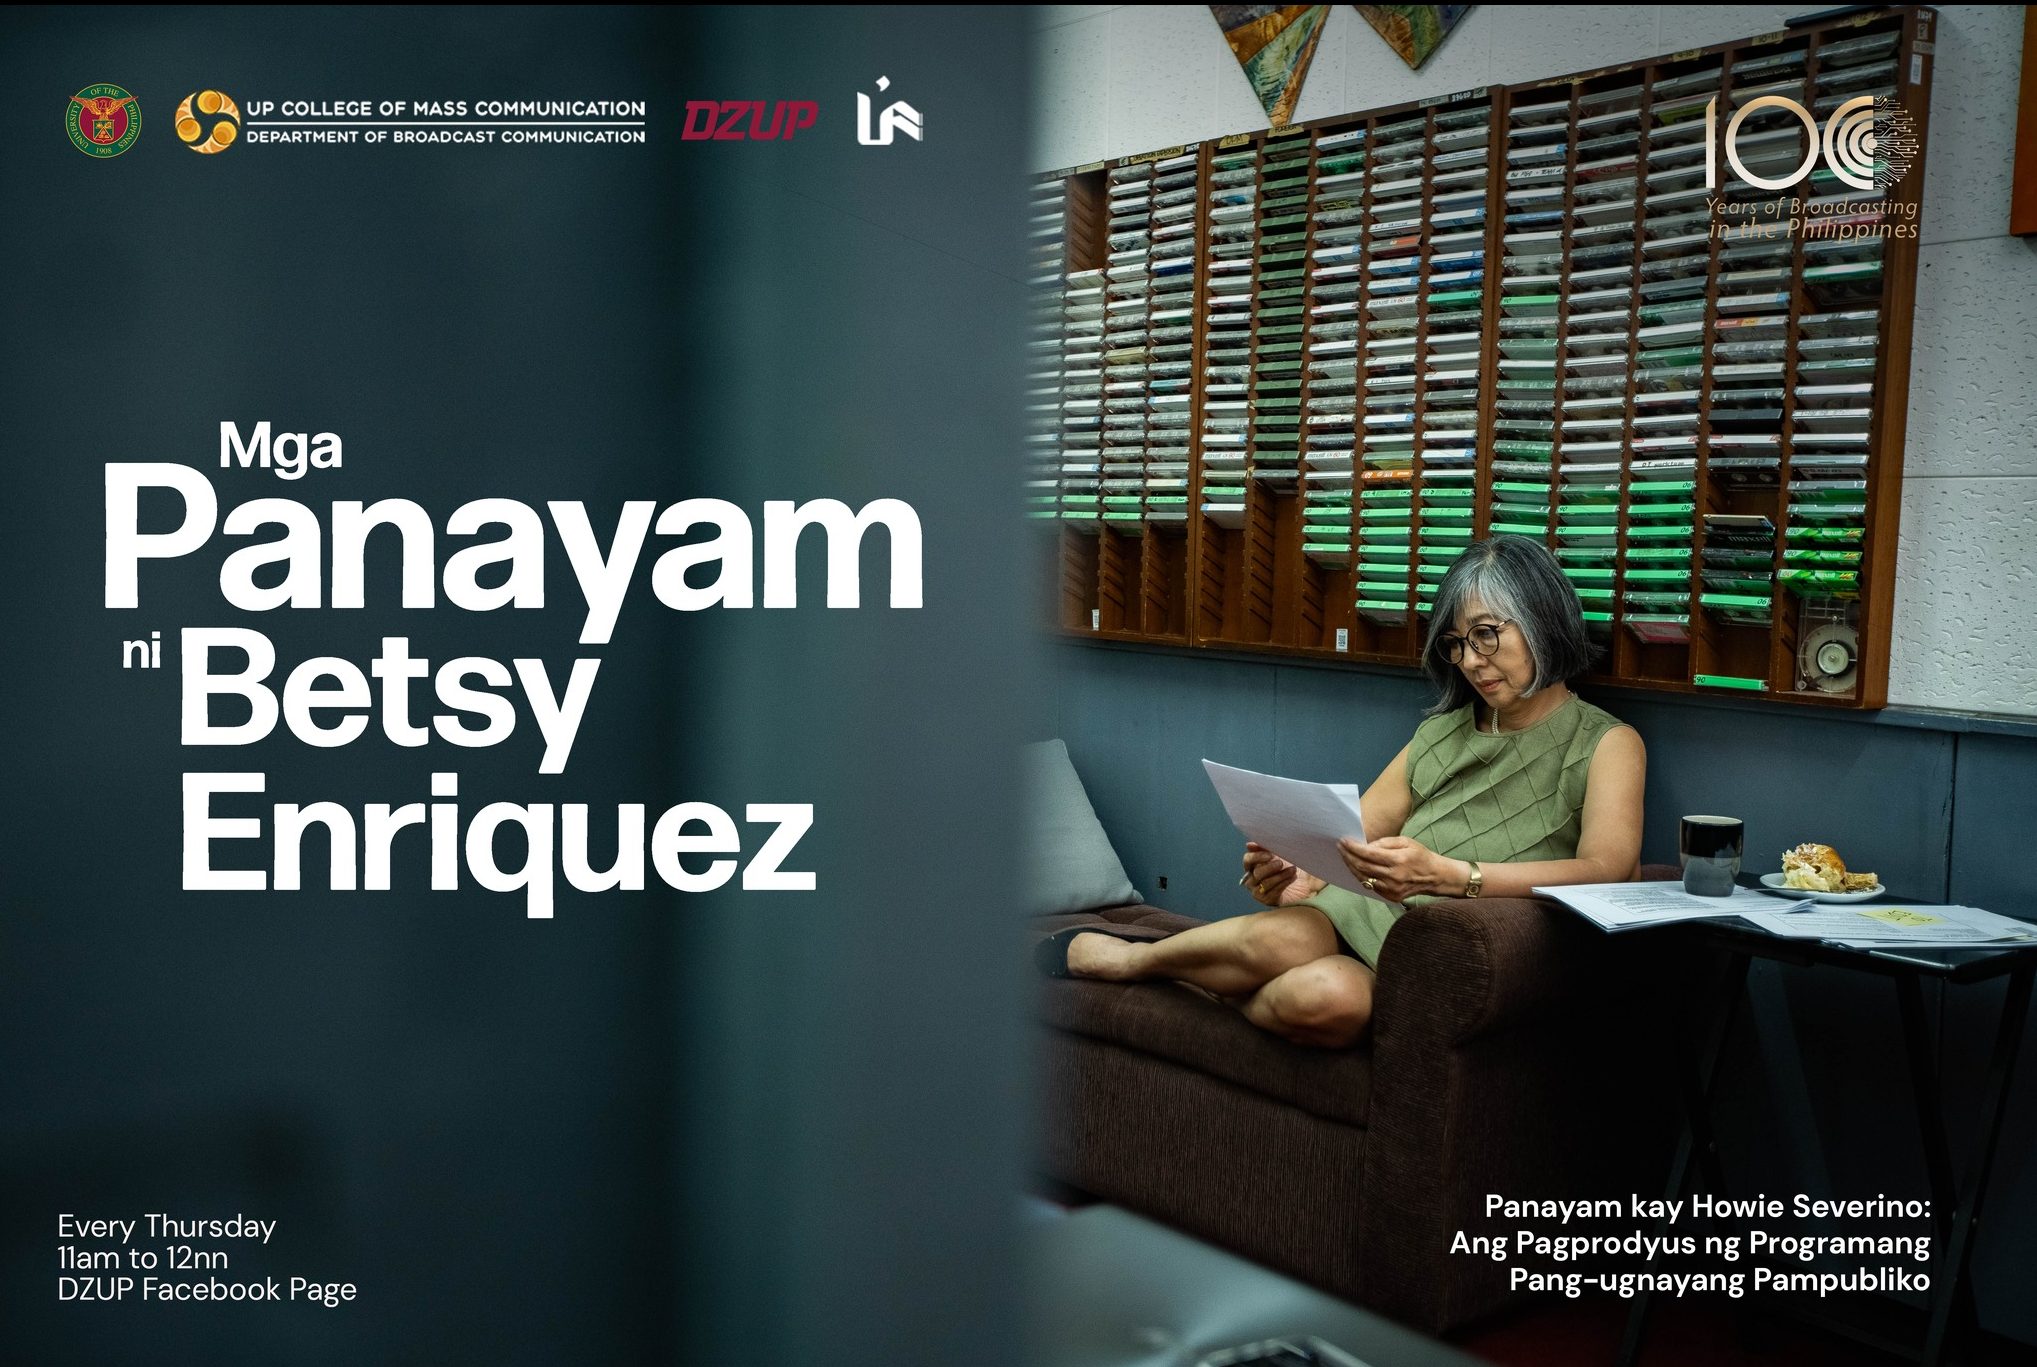 Mga Panayam ni Betsy Enriquez: Panayam kay Howie Severino: Ang Pagprodyus ng Programang Pang-ugnayang Pampubliko